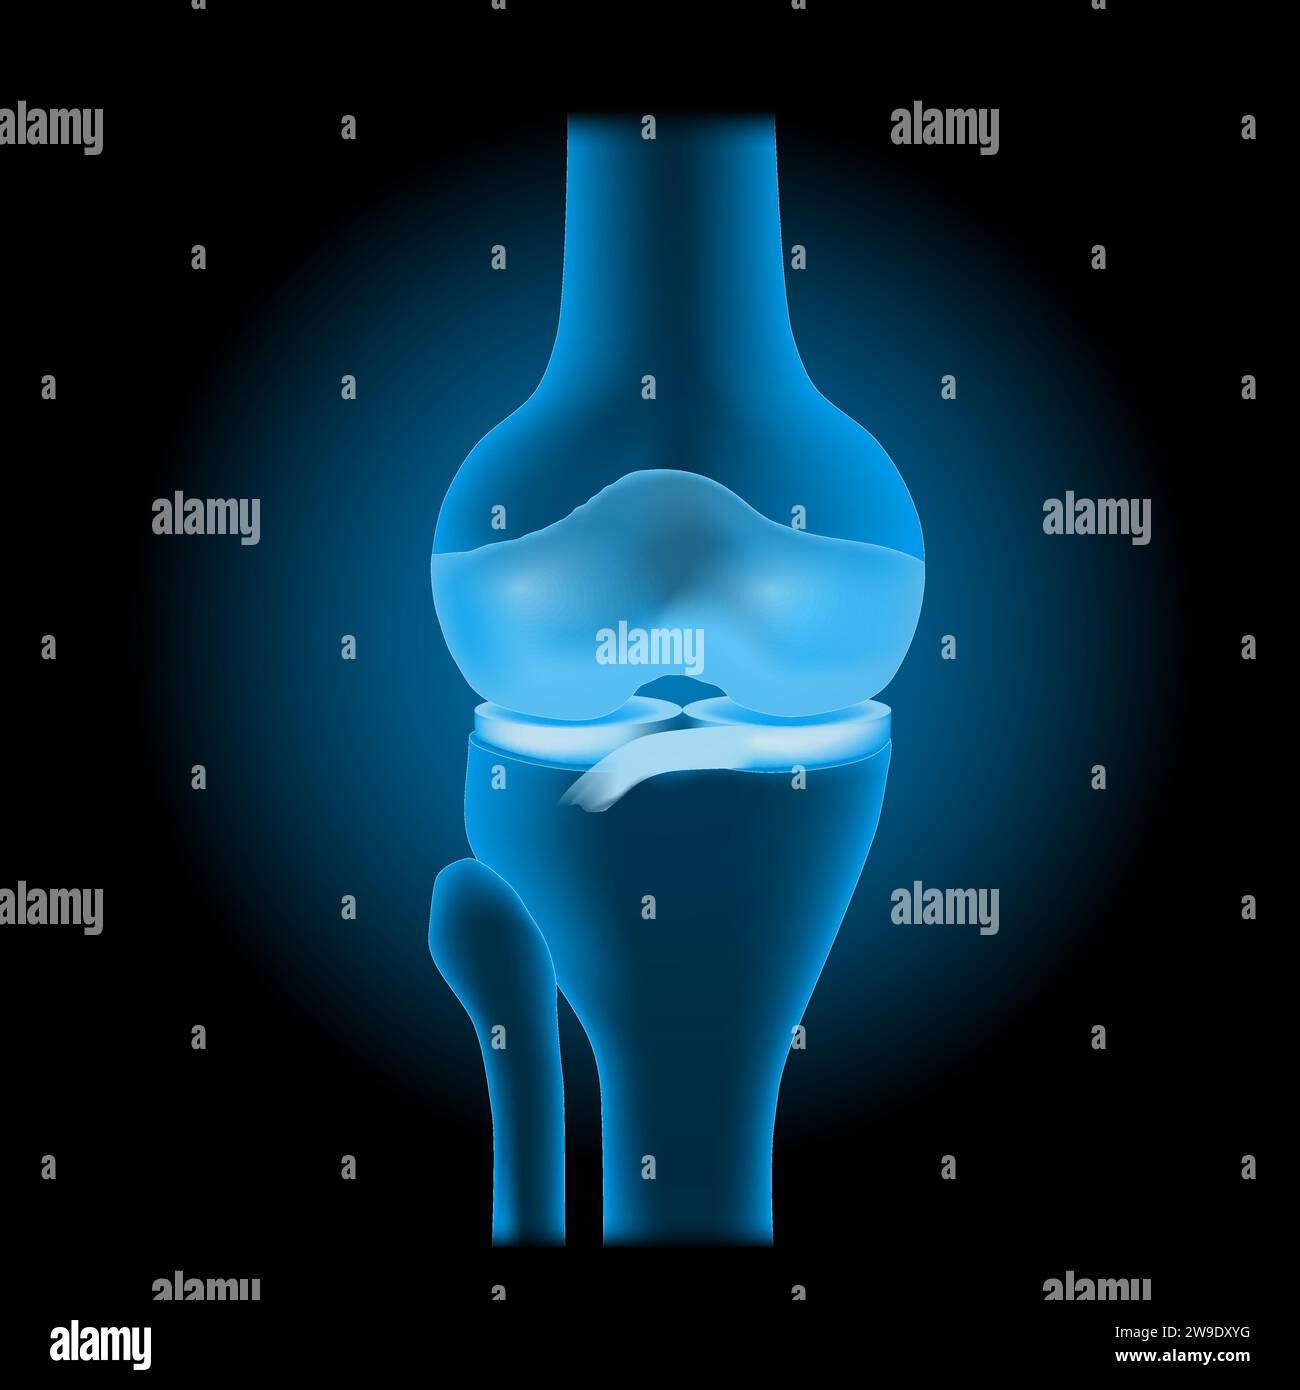 Die Anatomie des Kniegelenks. Vorderansicht des menschlichen Kniegelenkes mit leuchtender Wirkung. Realistisches transparentes blaues Gelenk mit Knochen, Meniskus, Bändern und Knorpel am da Stock Vektor